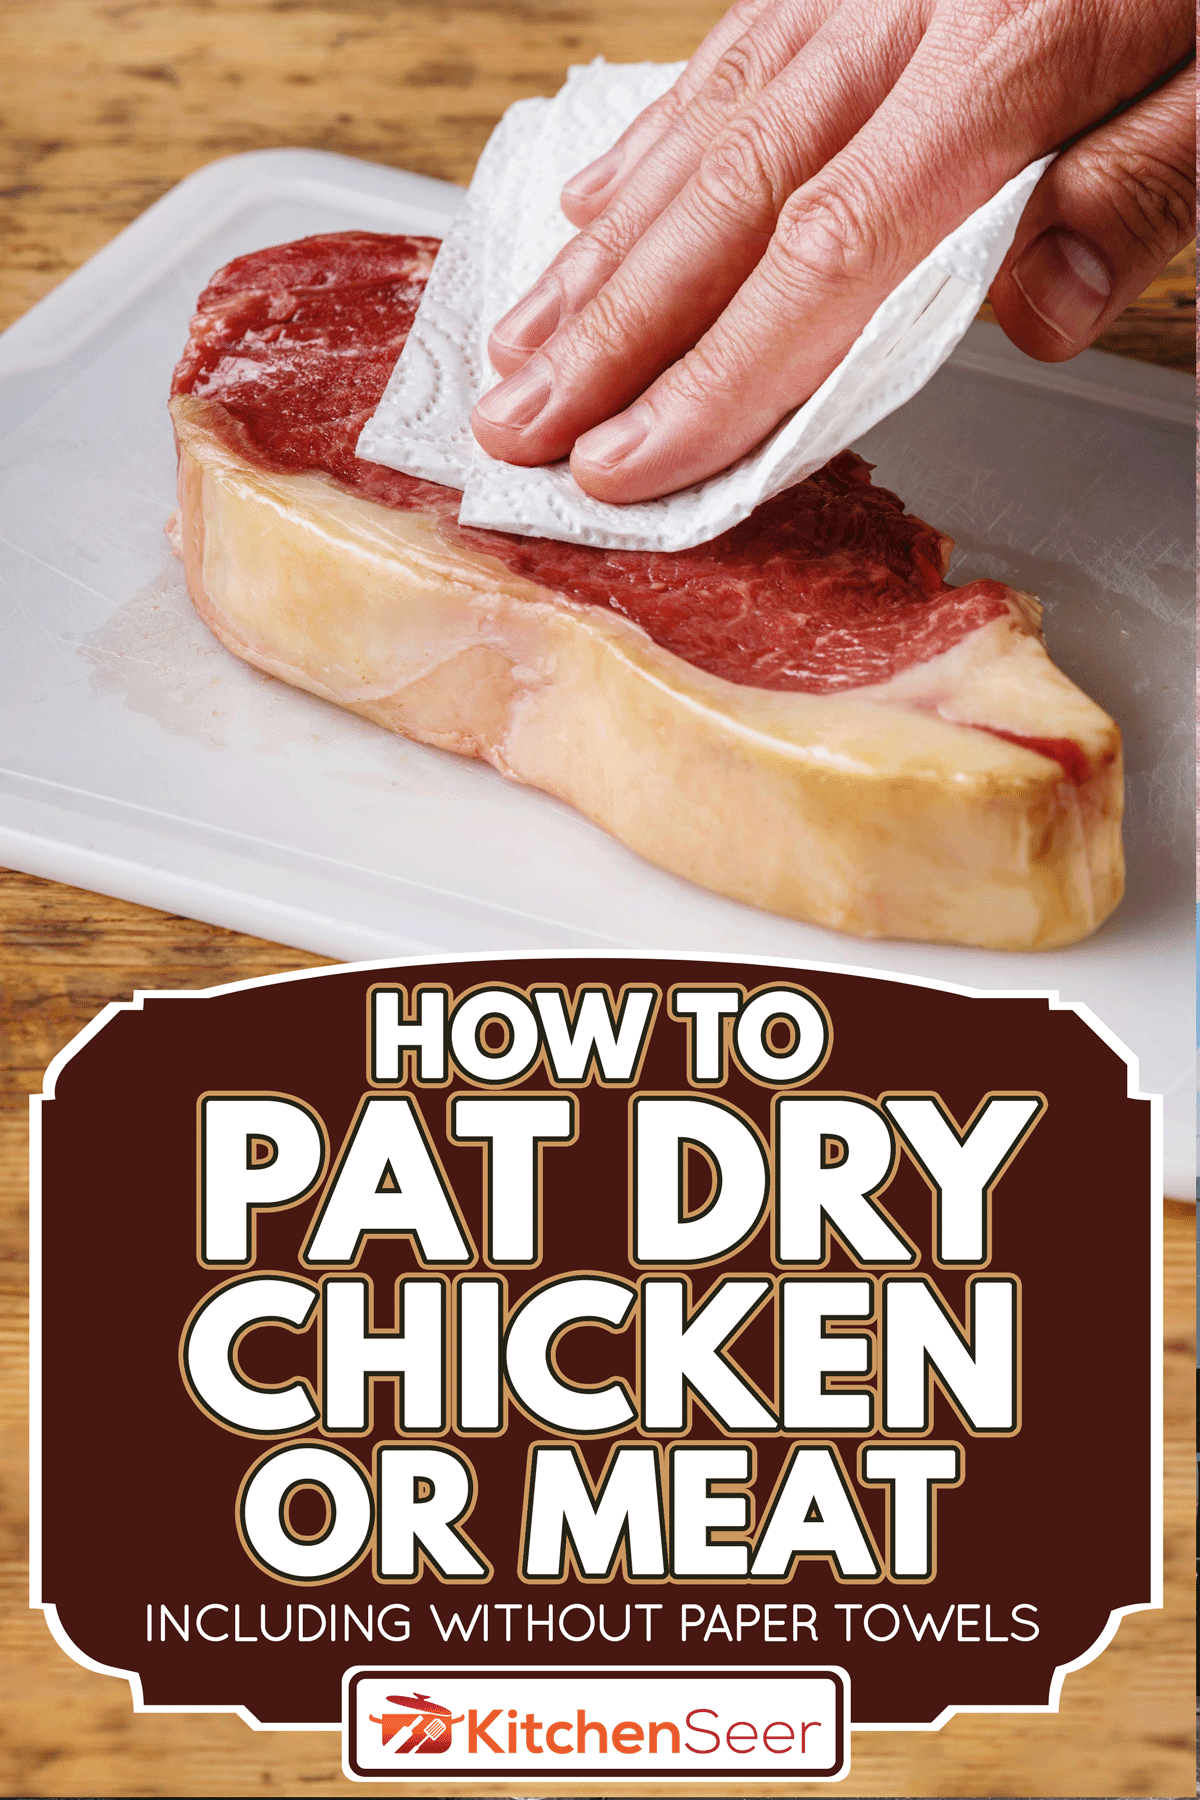 生肉牛排枯竭多余的水分用纸巾,如何拍干鸡和肉(Inc .)没有纸巾)